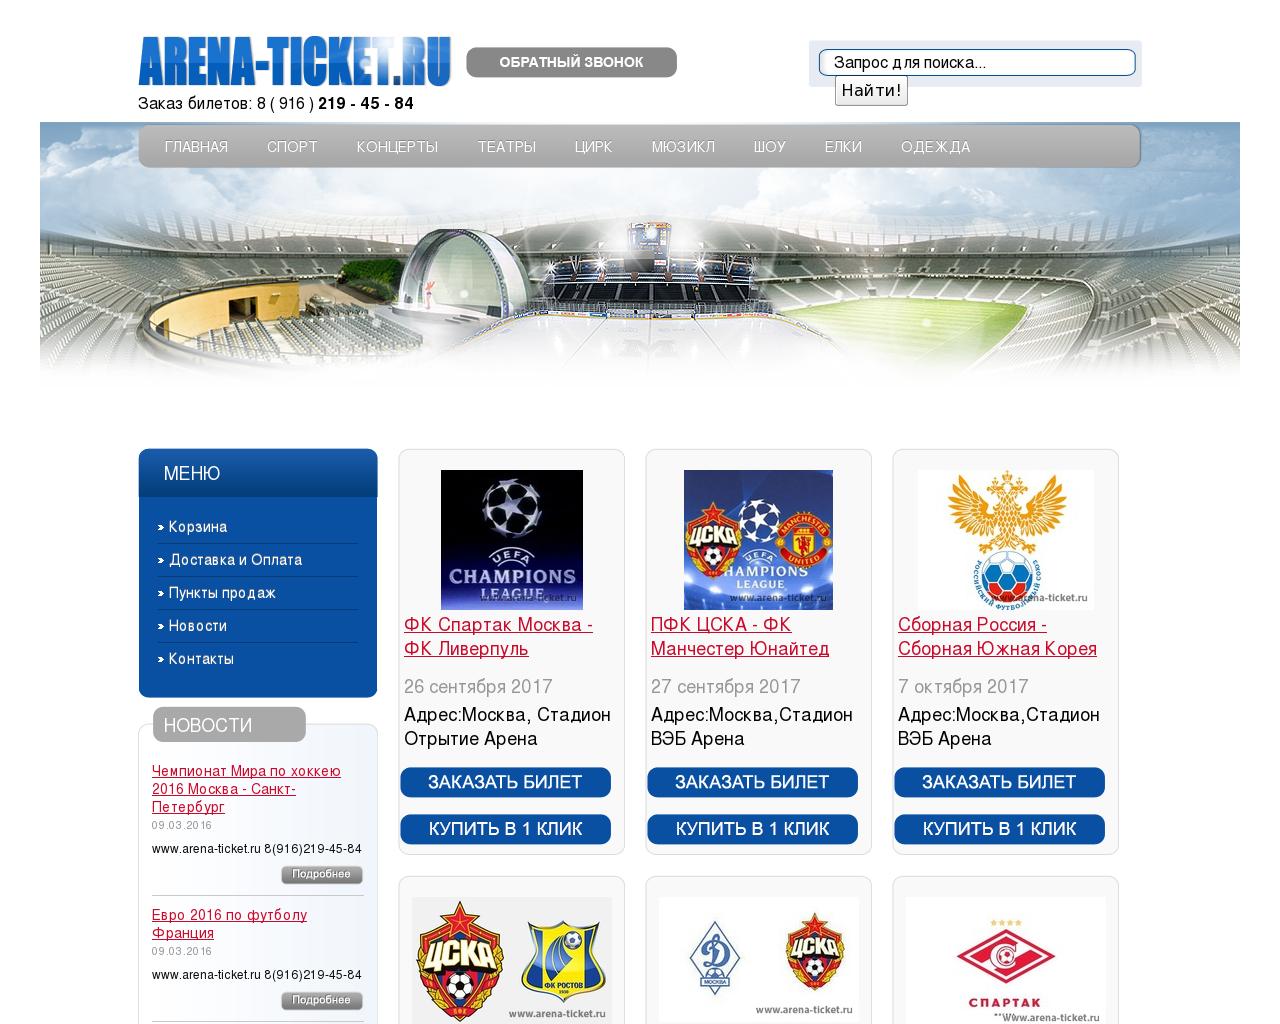 Изображение сайта arena-ticket.ru в разрешении 1280x1024